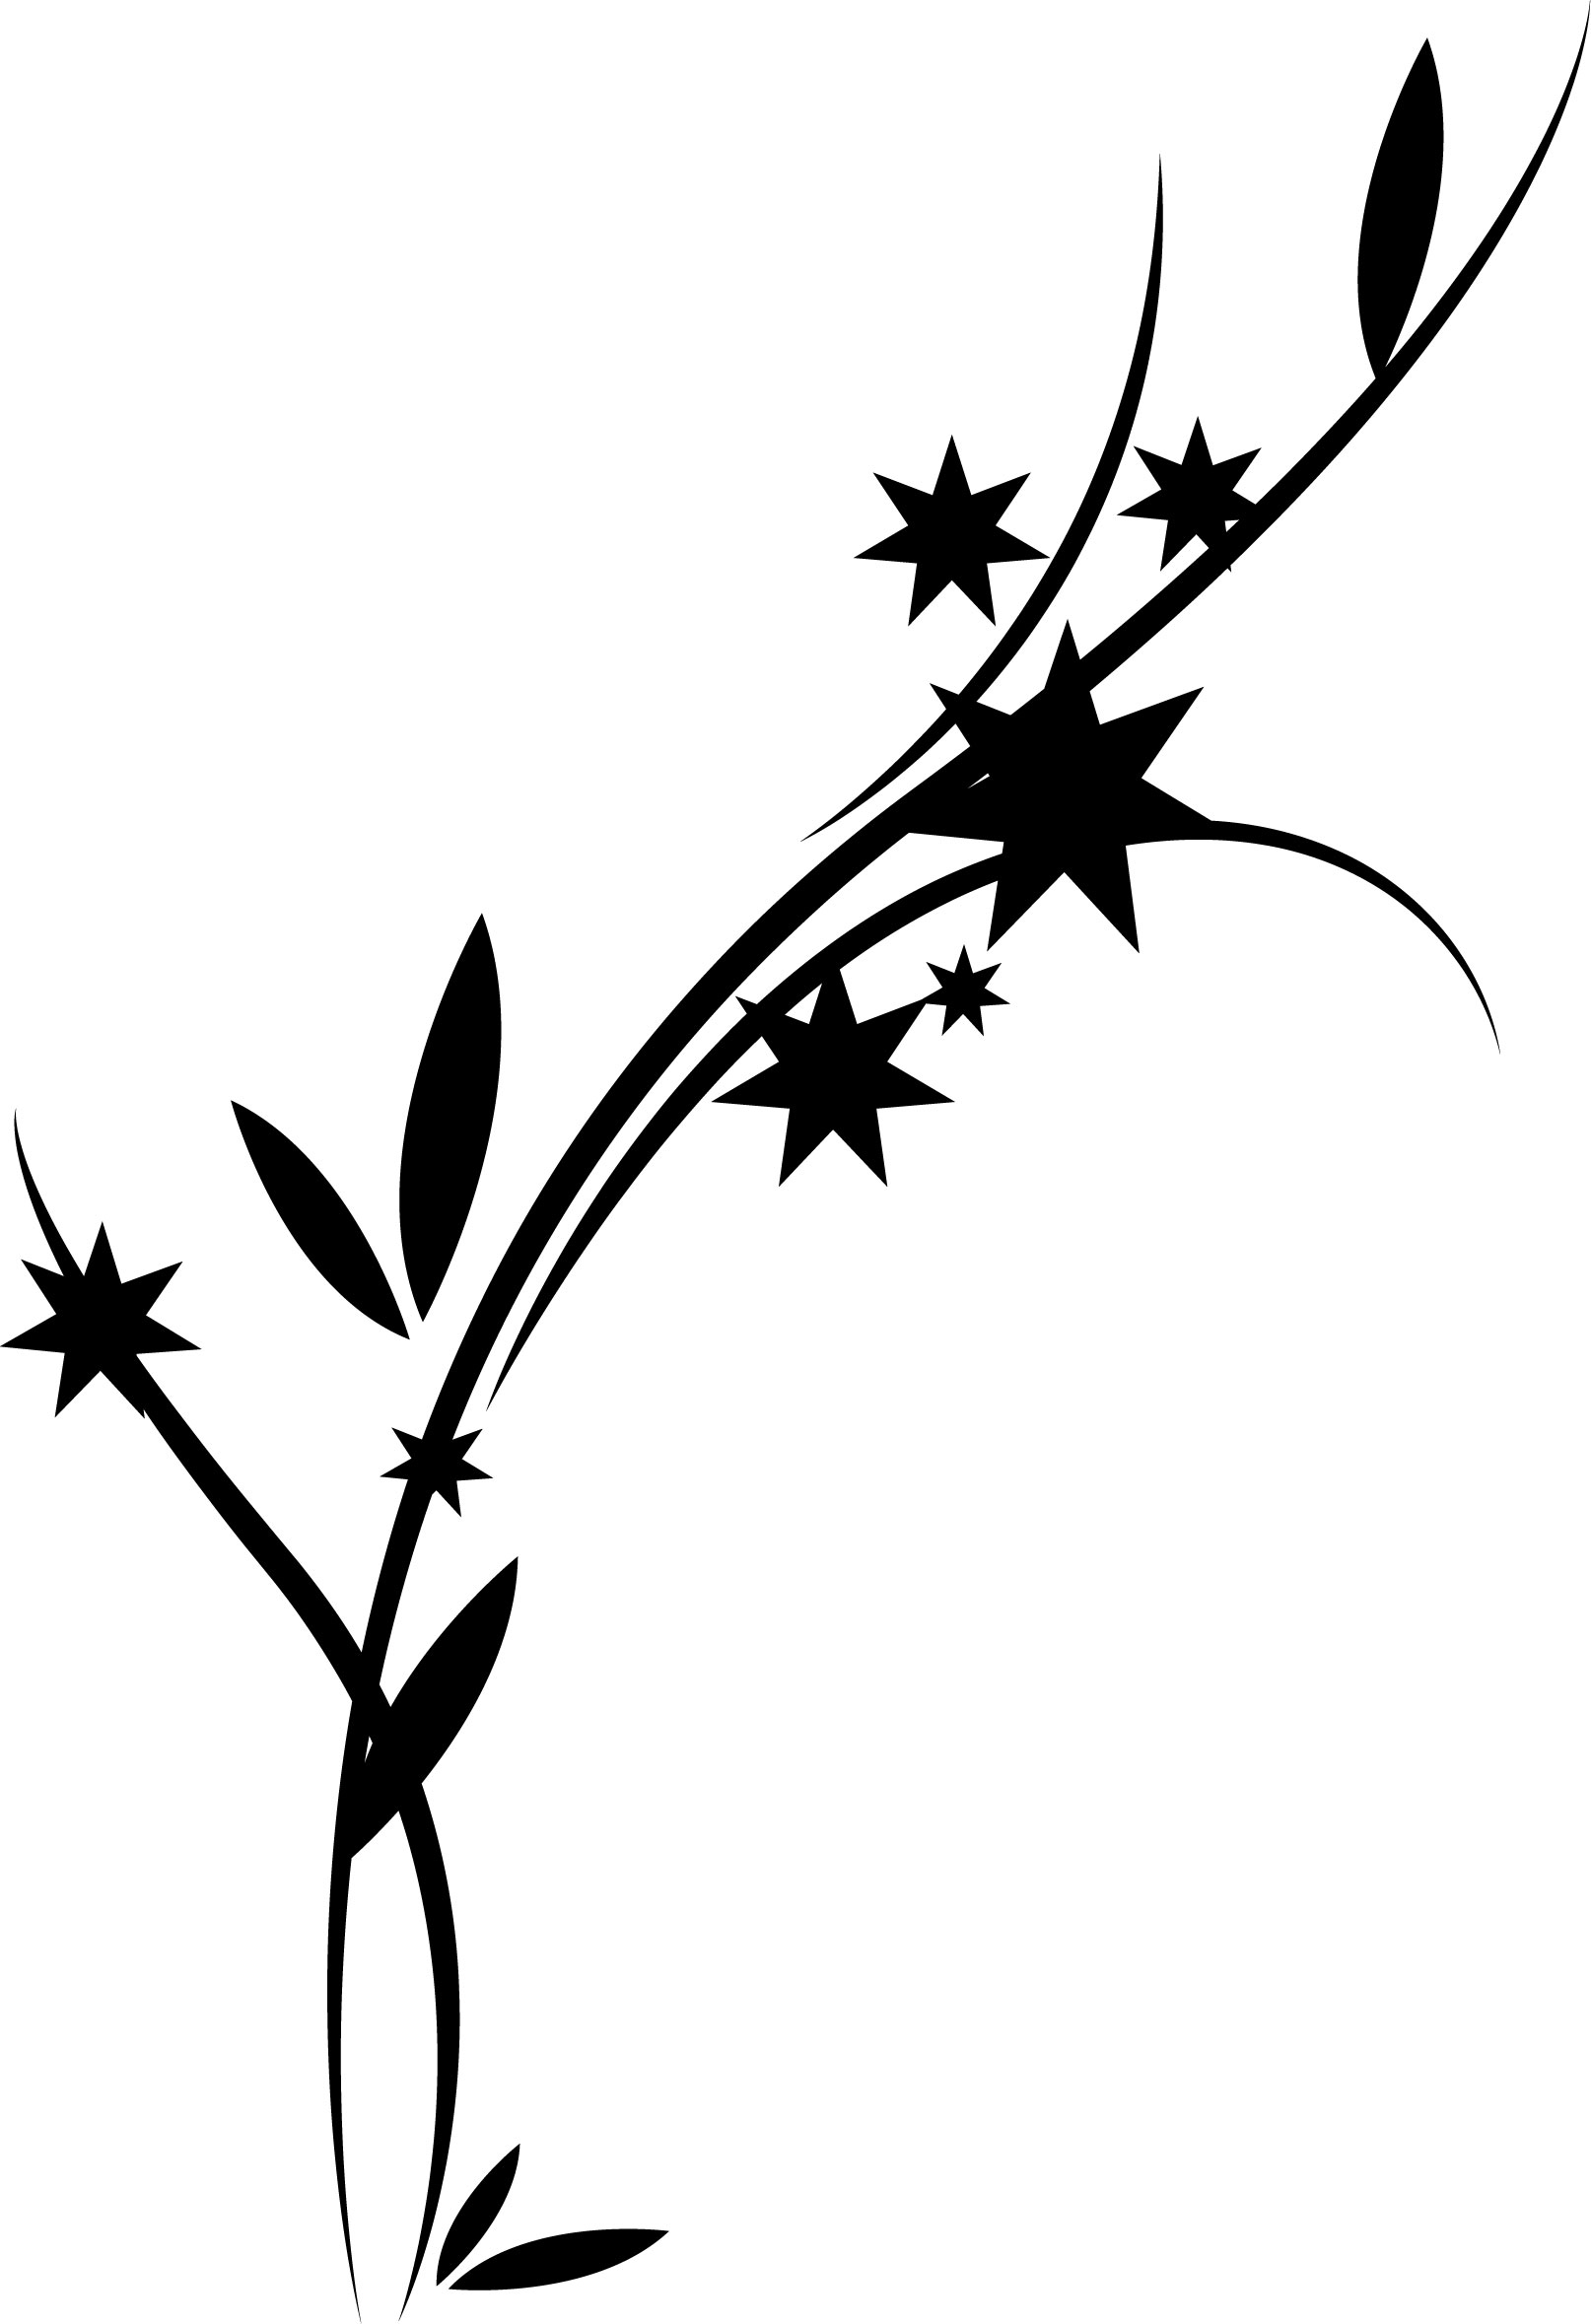 葉っぱの見本画像-白黒・葉・星